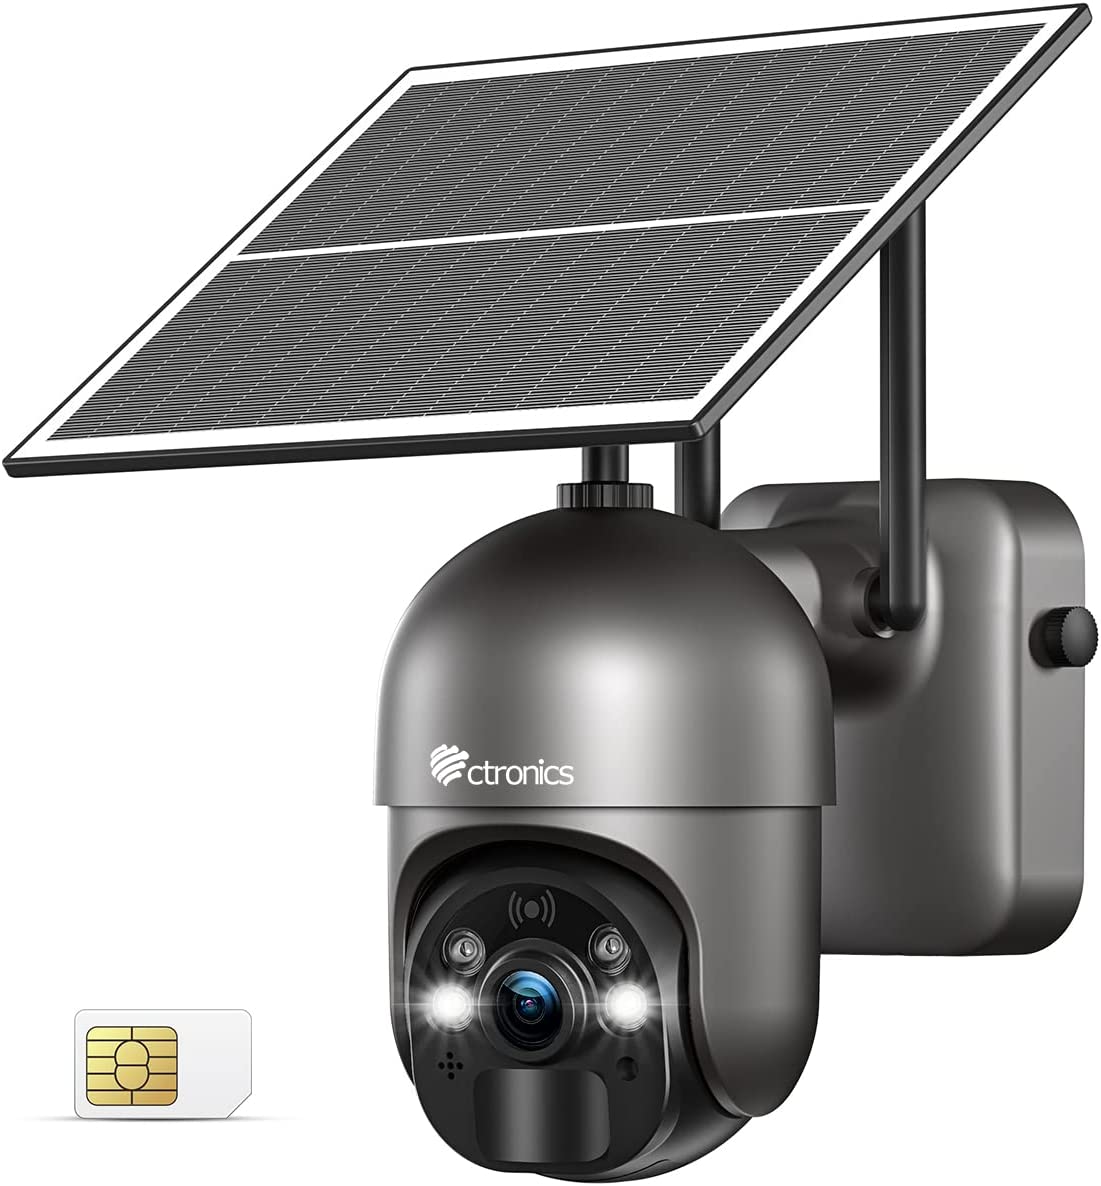 Caméra surveillance solaire infrarouge extérieure HD